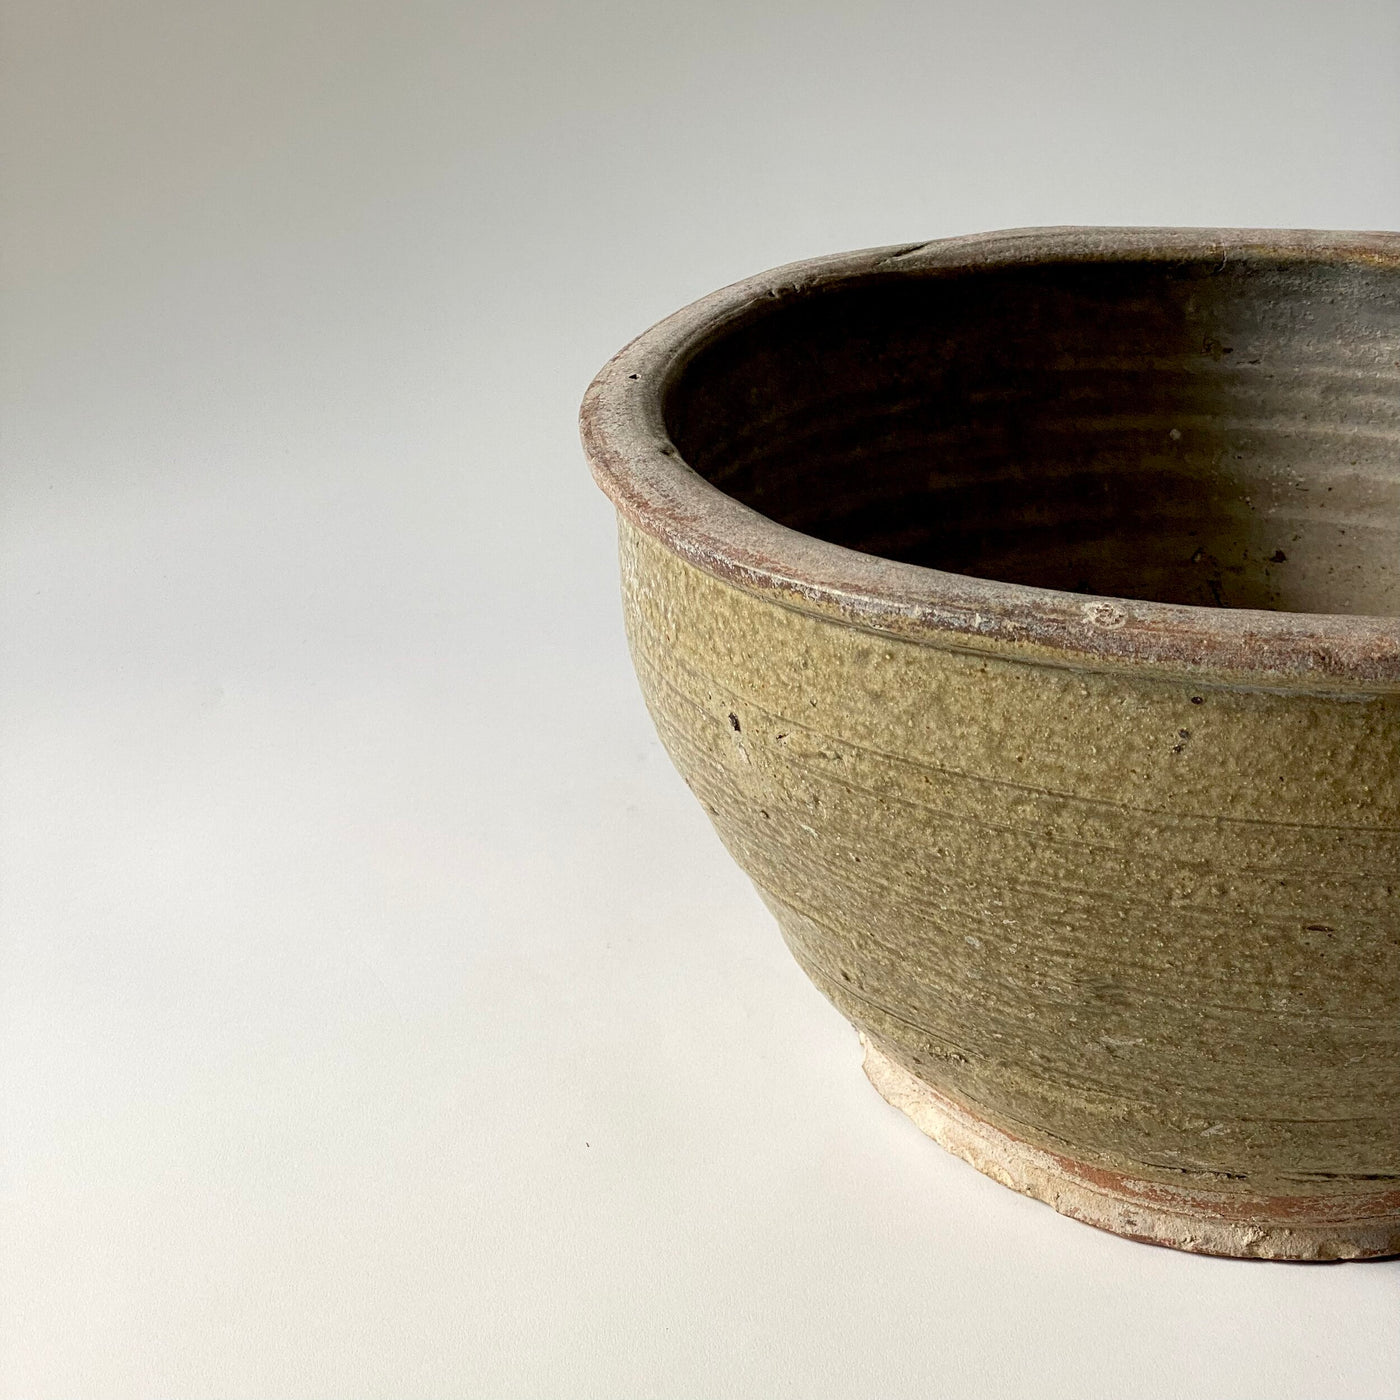 Yellow Ceramic Glazed Pot